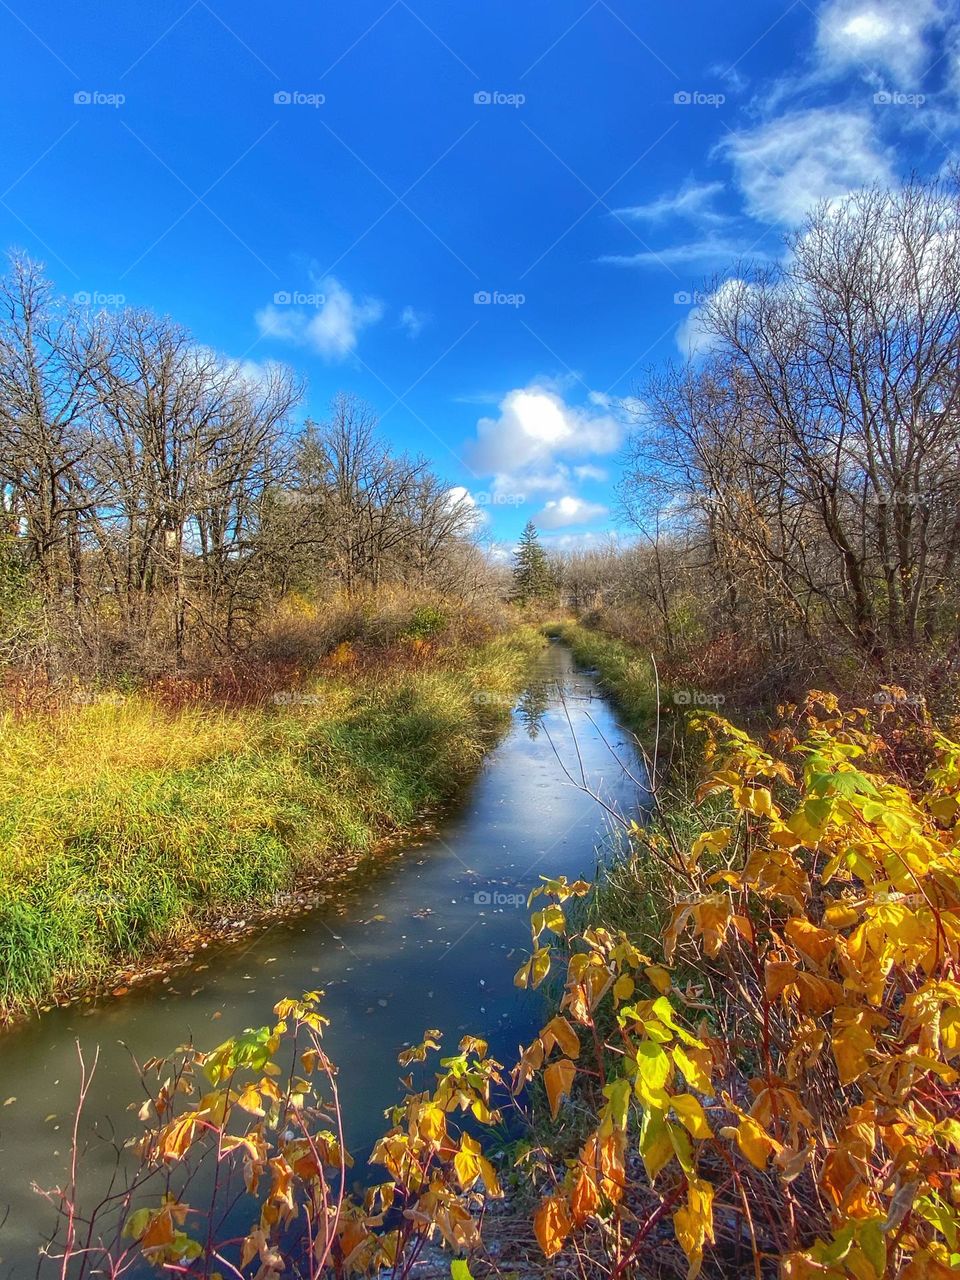 Peaceful creek in the changing season 